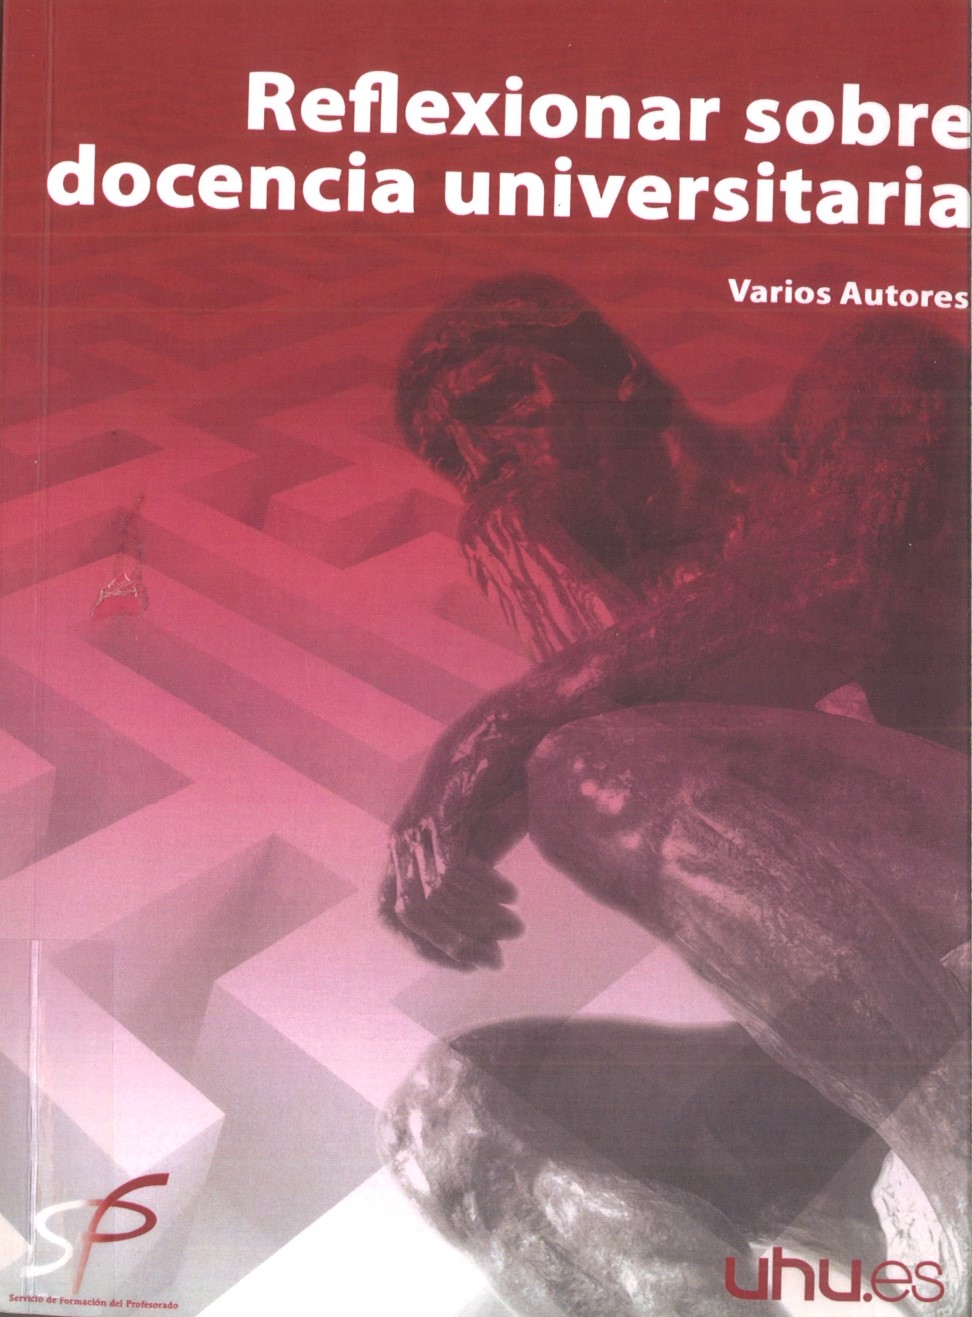 Imagen de portada del libro Reflexionar sobre docencia universitaria